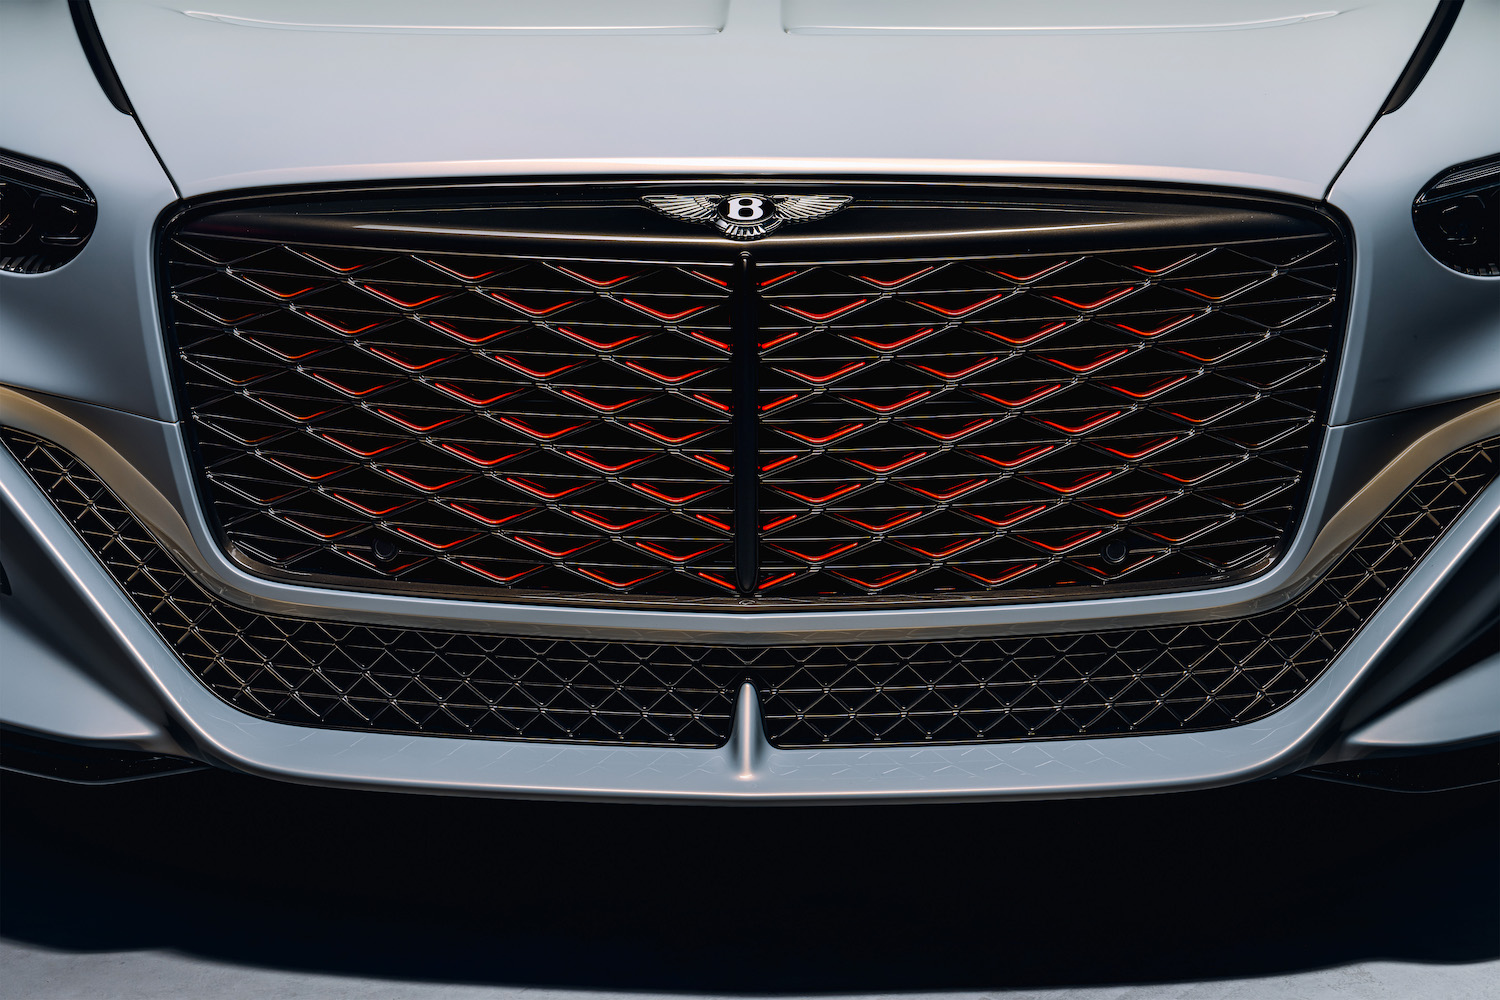 Bentley se prépare à la production de voitures électriques en 2026